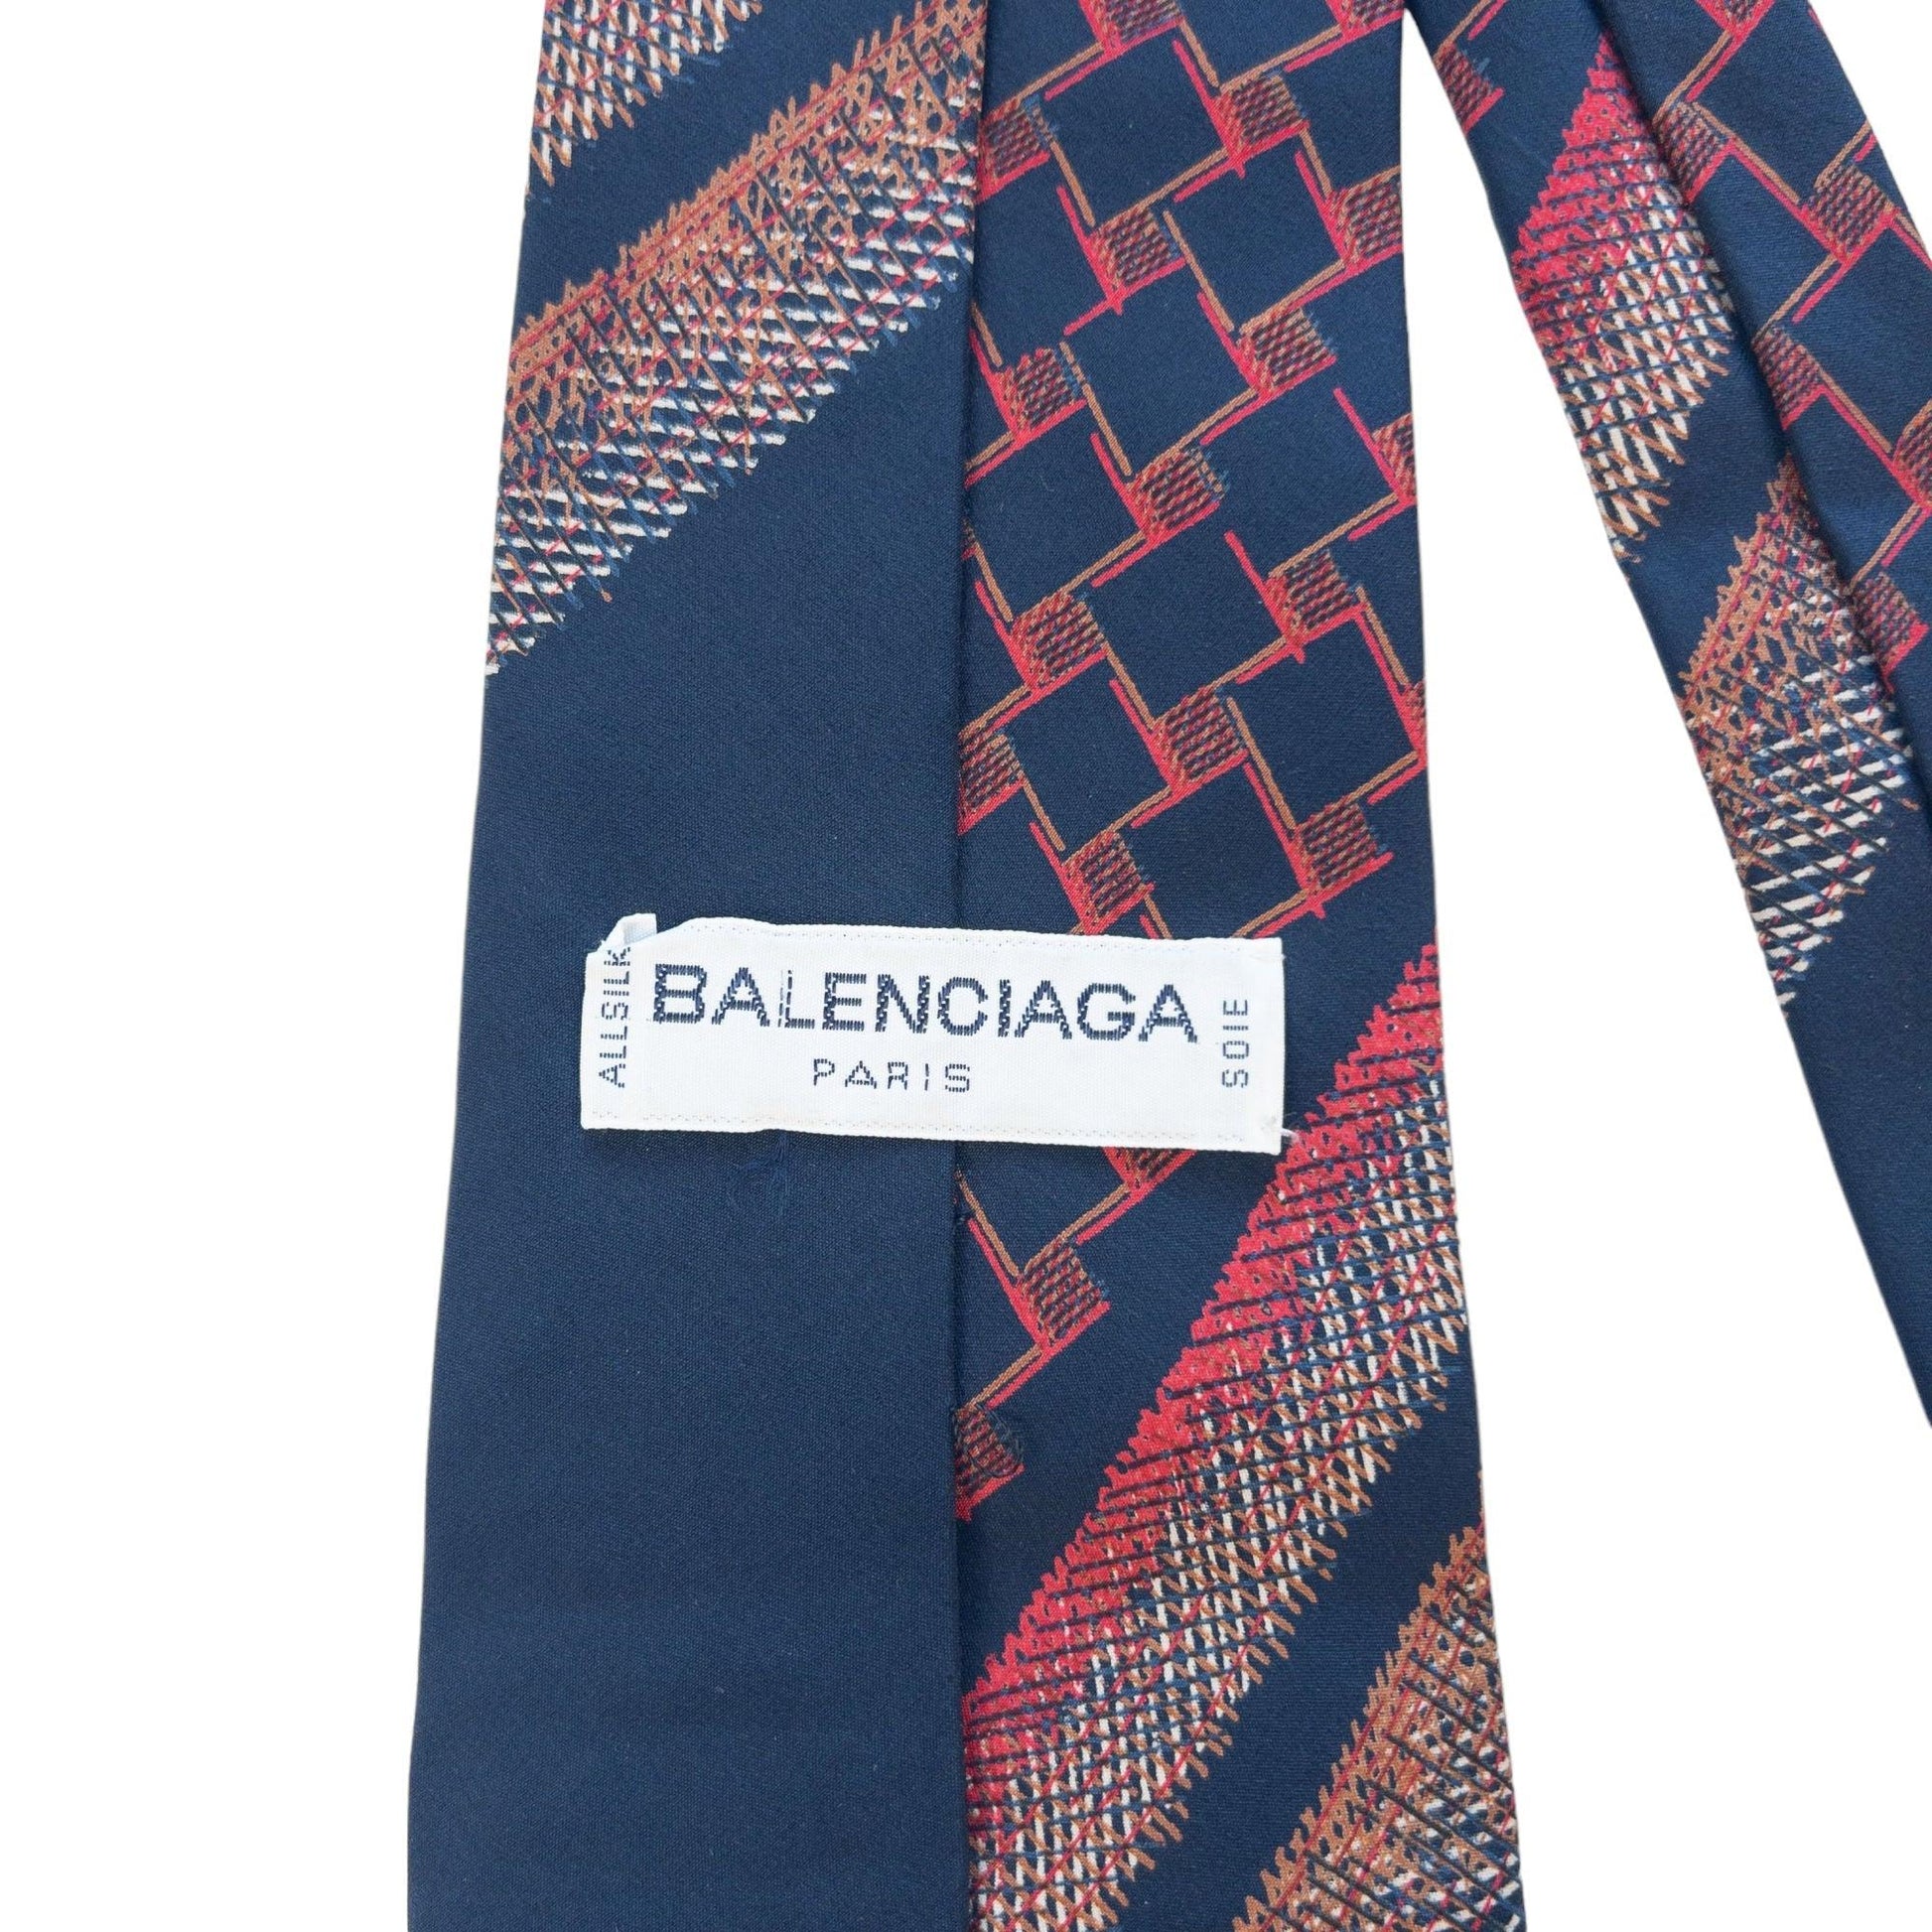 Vintage Balenciaga Silk Tie - Known Source